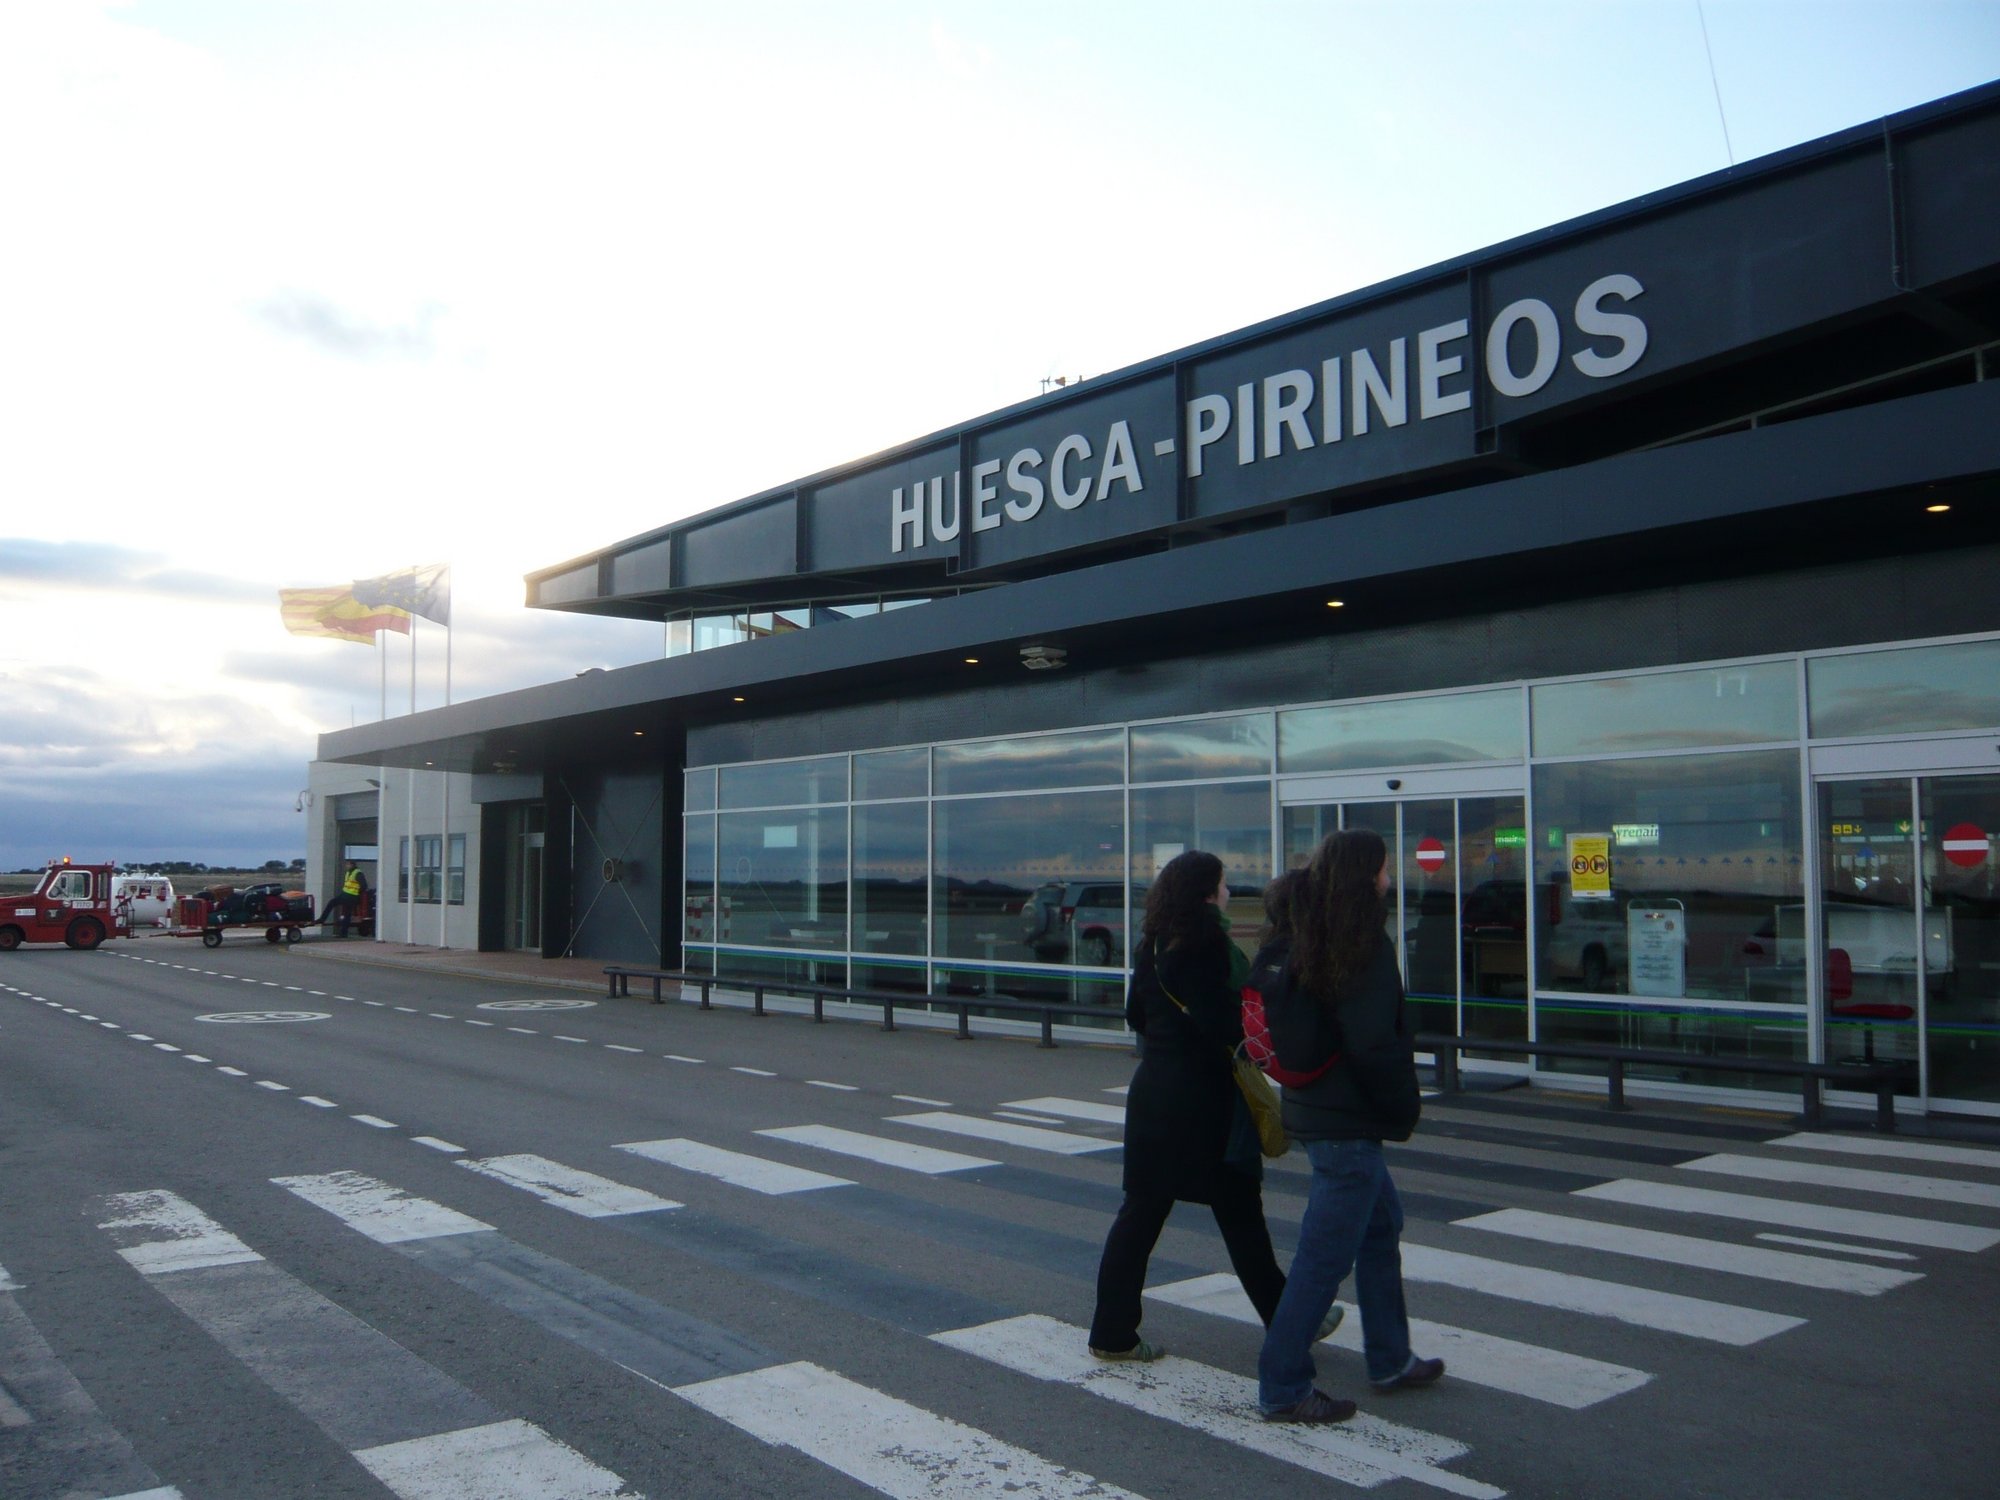 El aeropuerto de Huesca, que costó 45 millones, recibe 11 viajeros en dos meses